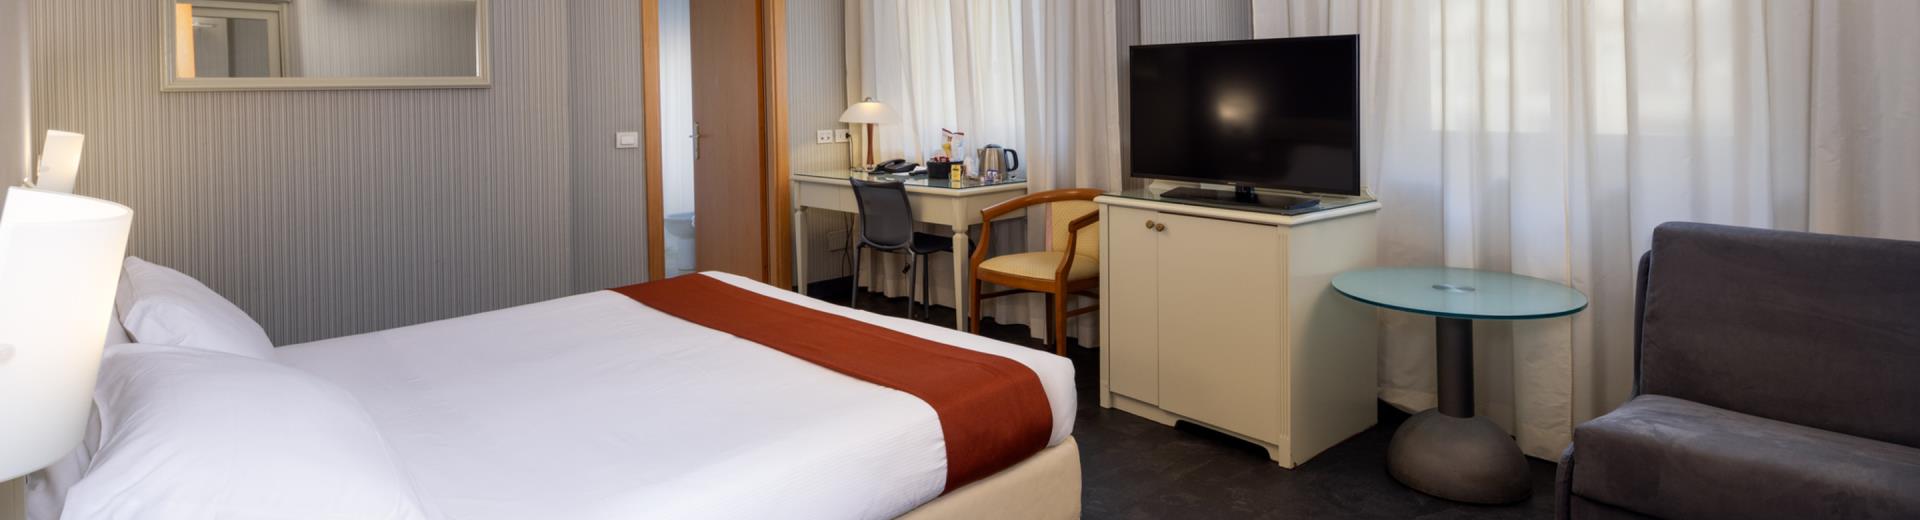 Chambre triple confort au Best Western Hotel Major de Milan. Confortable et accueillante, elle est équipée d’une télévision par satellite LCD de 40 pouces avec radio et réveil, d’une connexion Wi-Fi gratuite et d’un minibar.